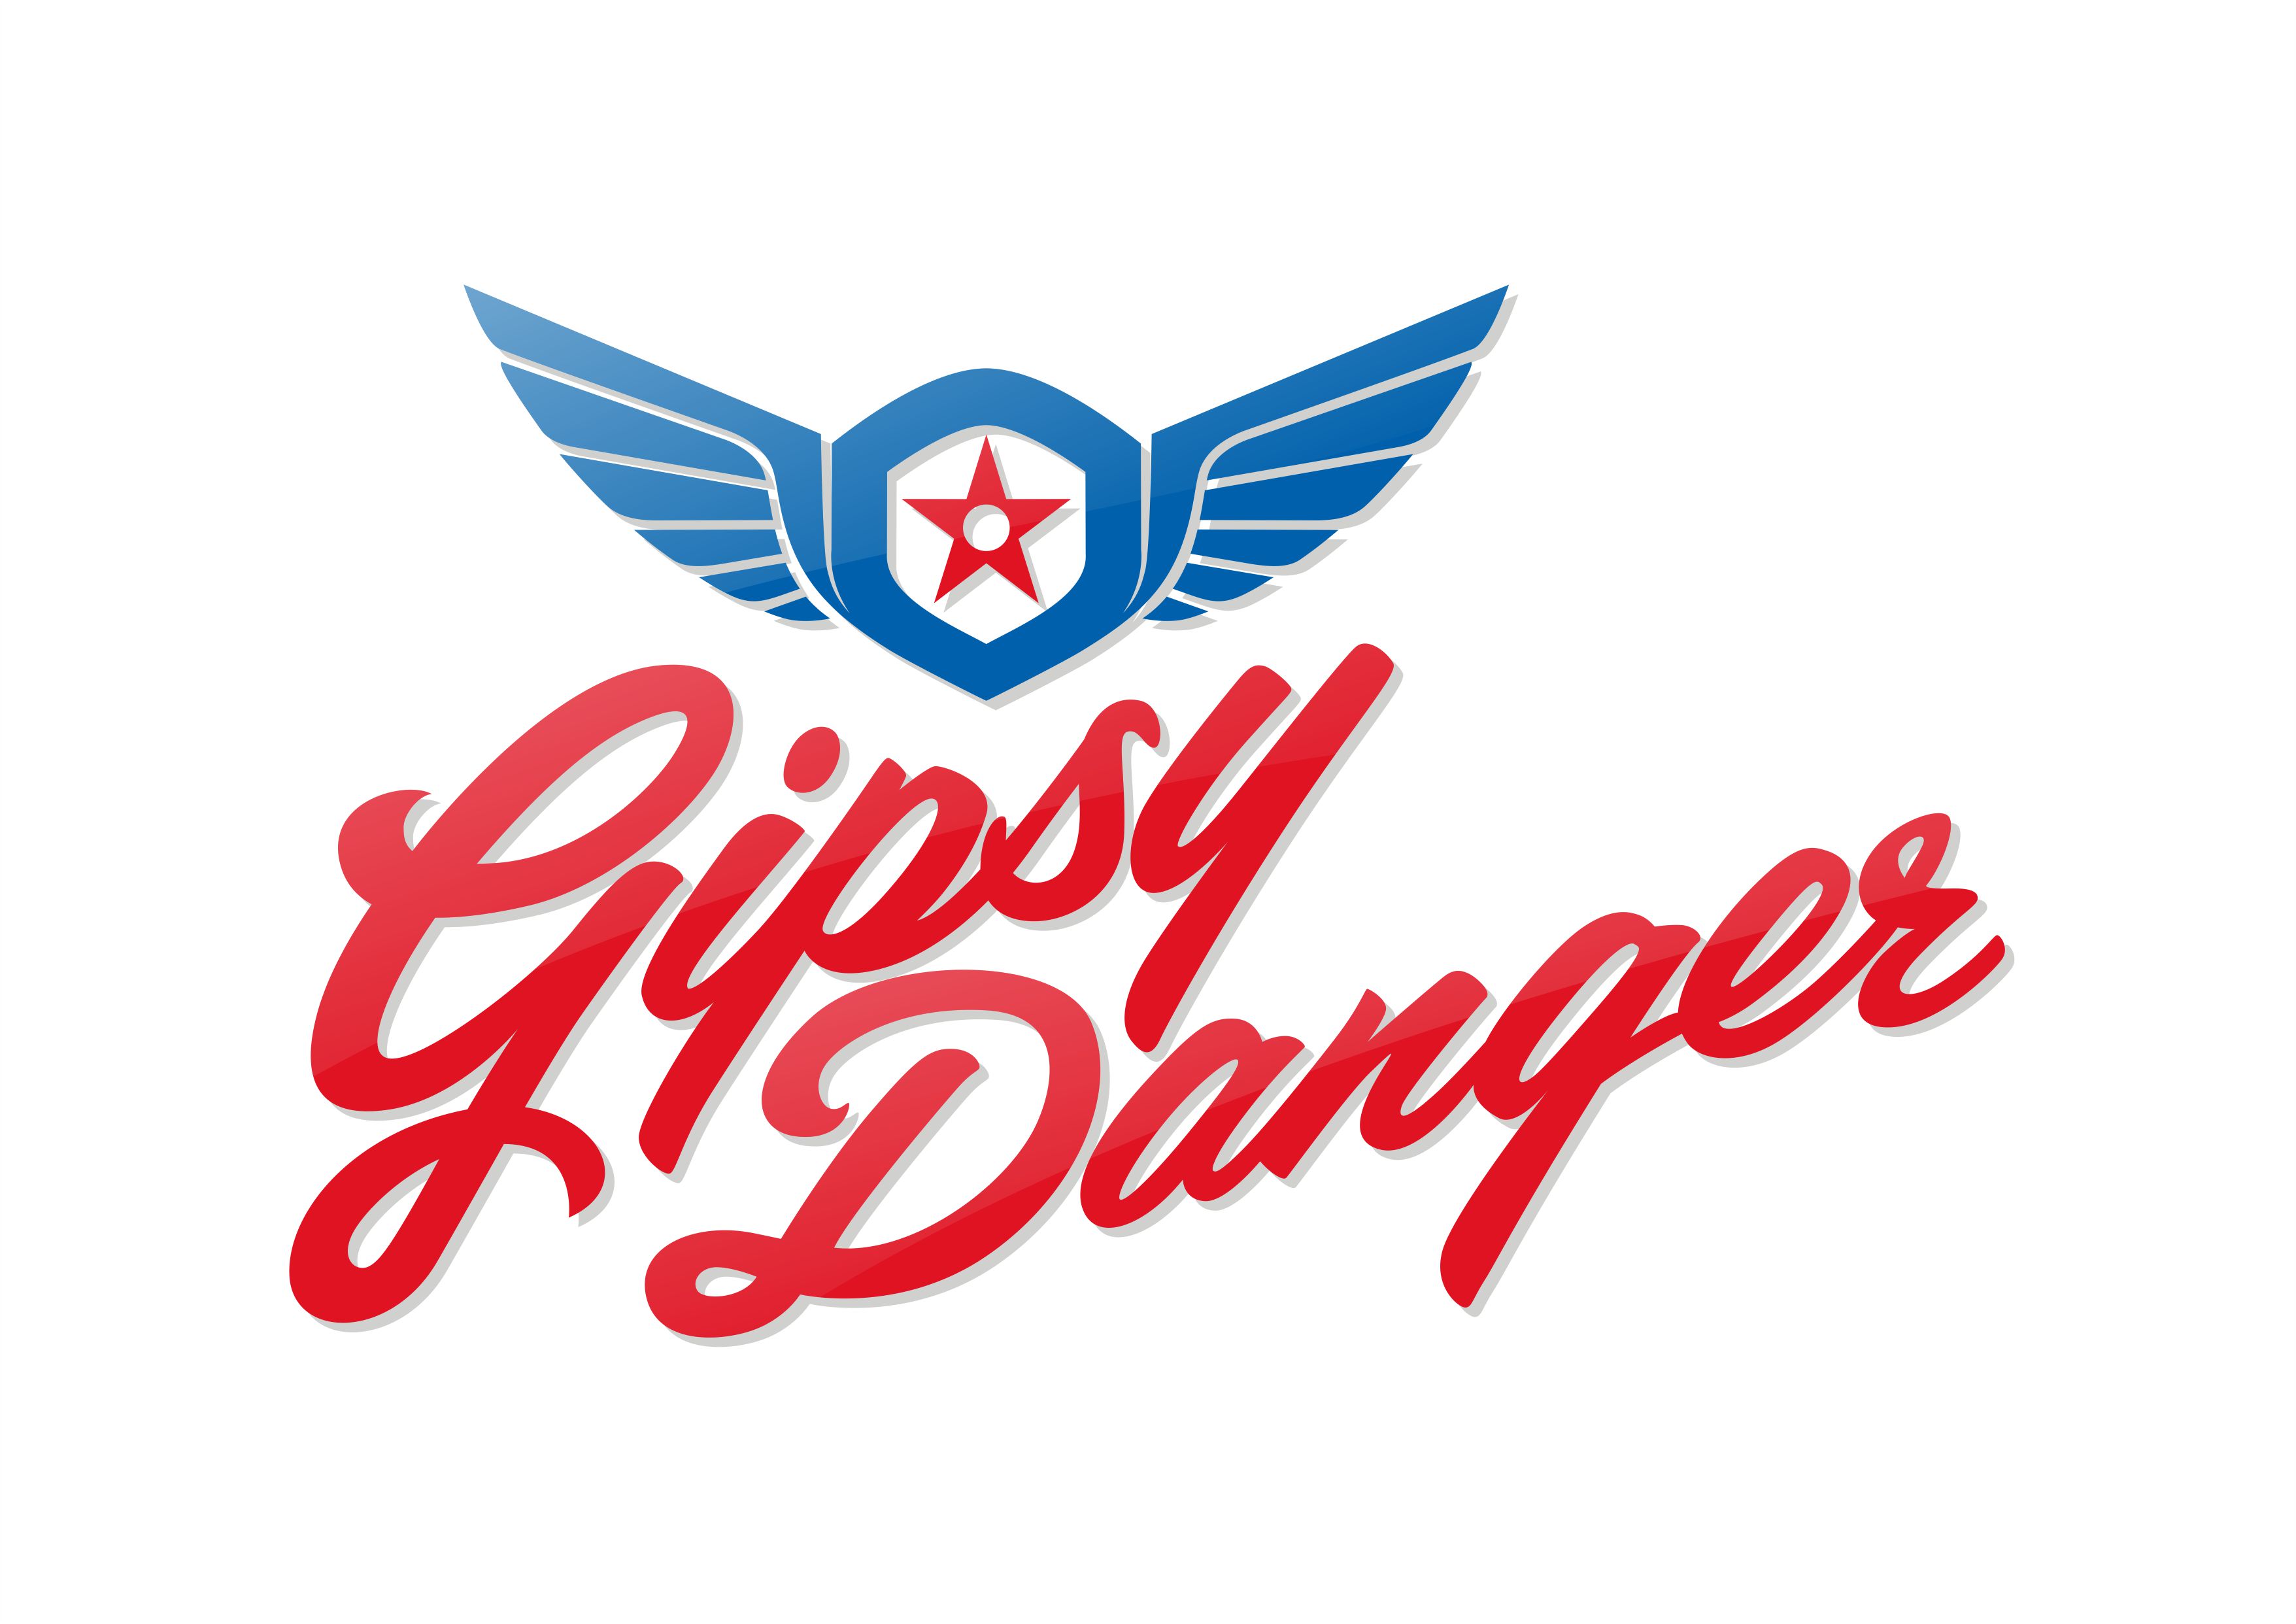 Gypsy Danger By Dandoorlando